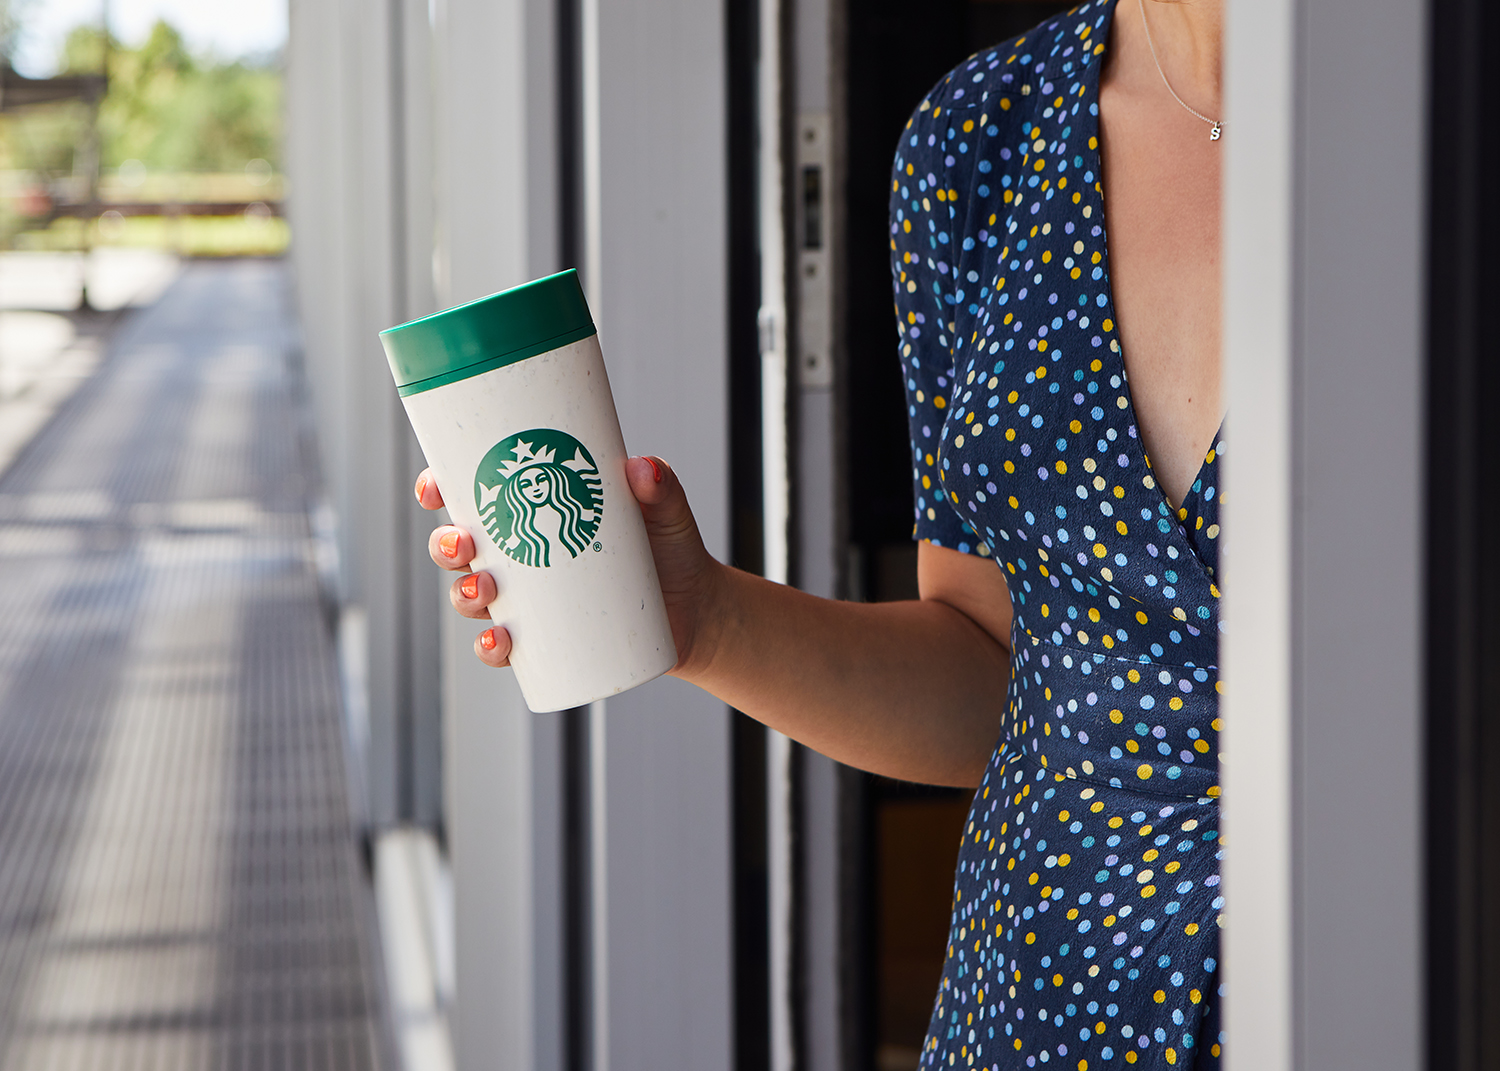 Starbucks CEO Schultz kauft Aktien und nutzt Tech-Brand als Chance